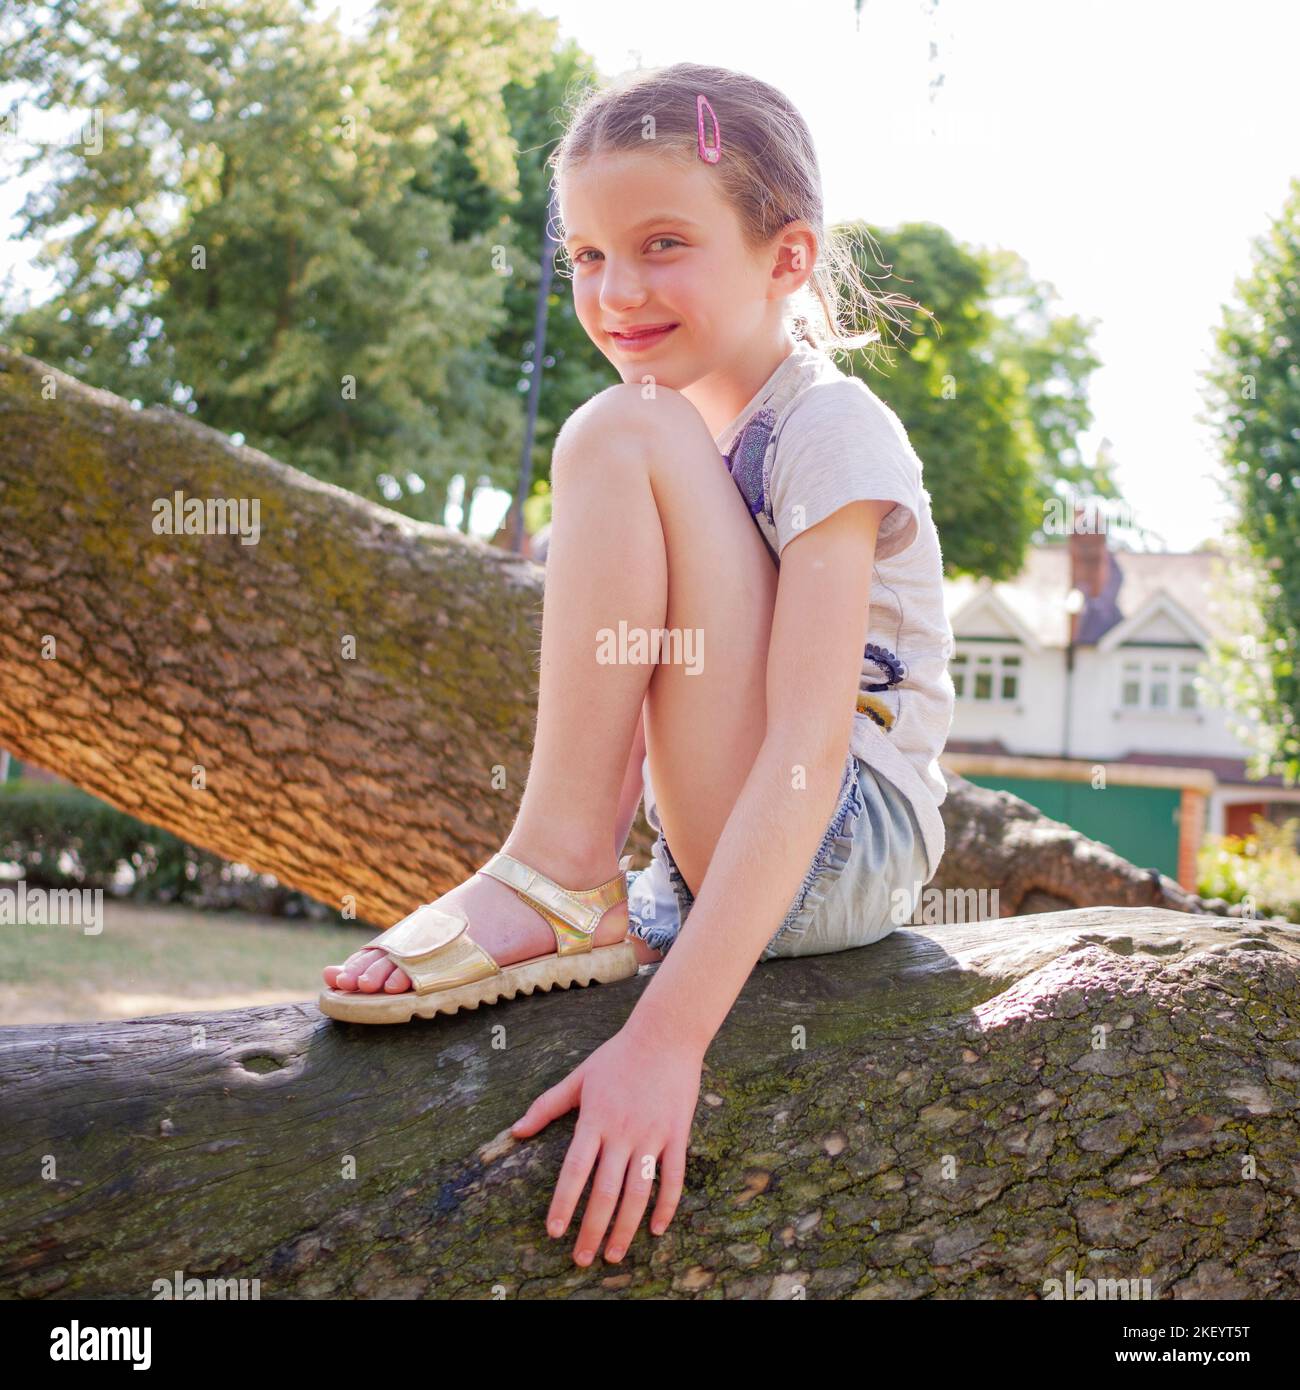 Porträt eines glücklichen jungen achtjährigen Mädchens, das auf einem Baumzweig im Park sitzt, England, Großbritannien Stockfoto